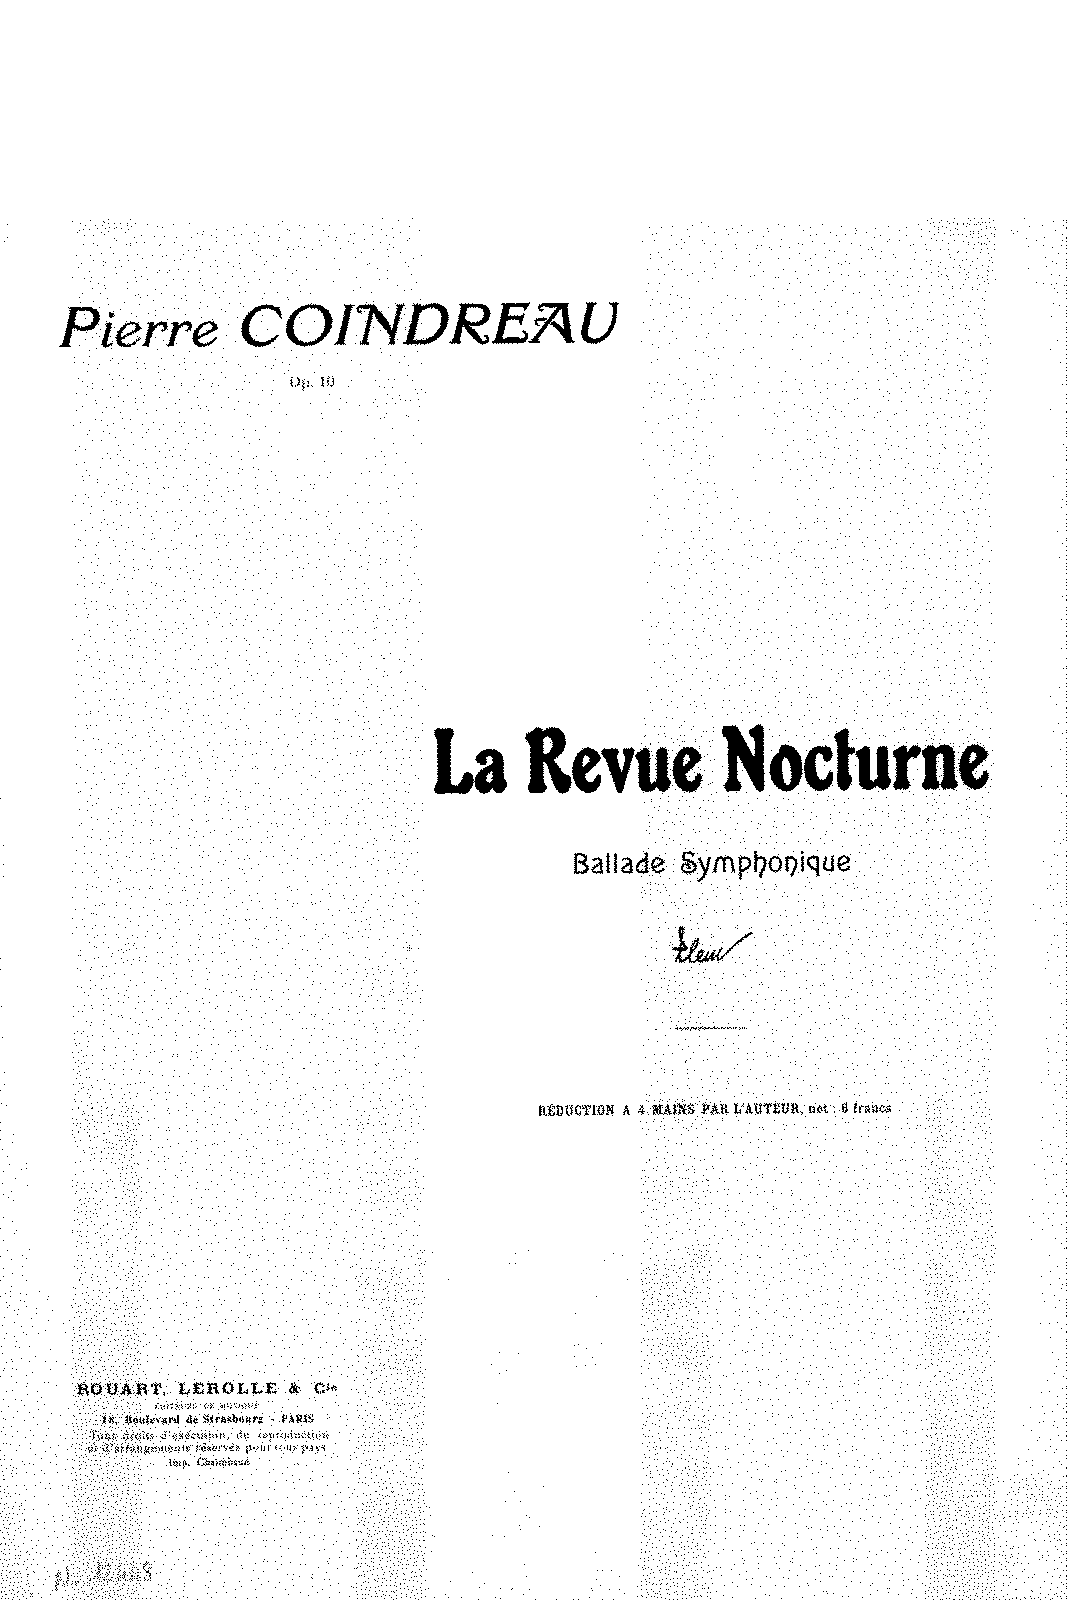 La revue nocturne, Op.10 (Coindreau, Pierre) - IMSLP